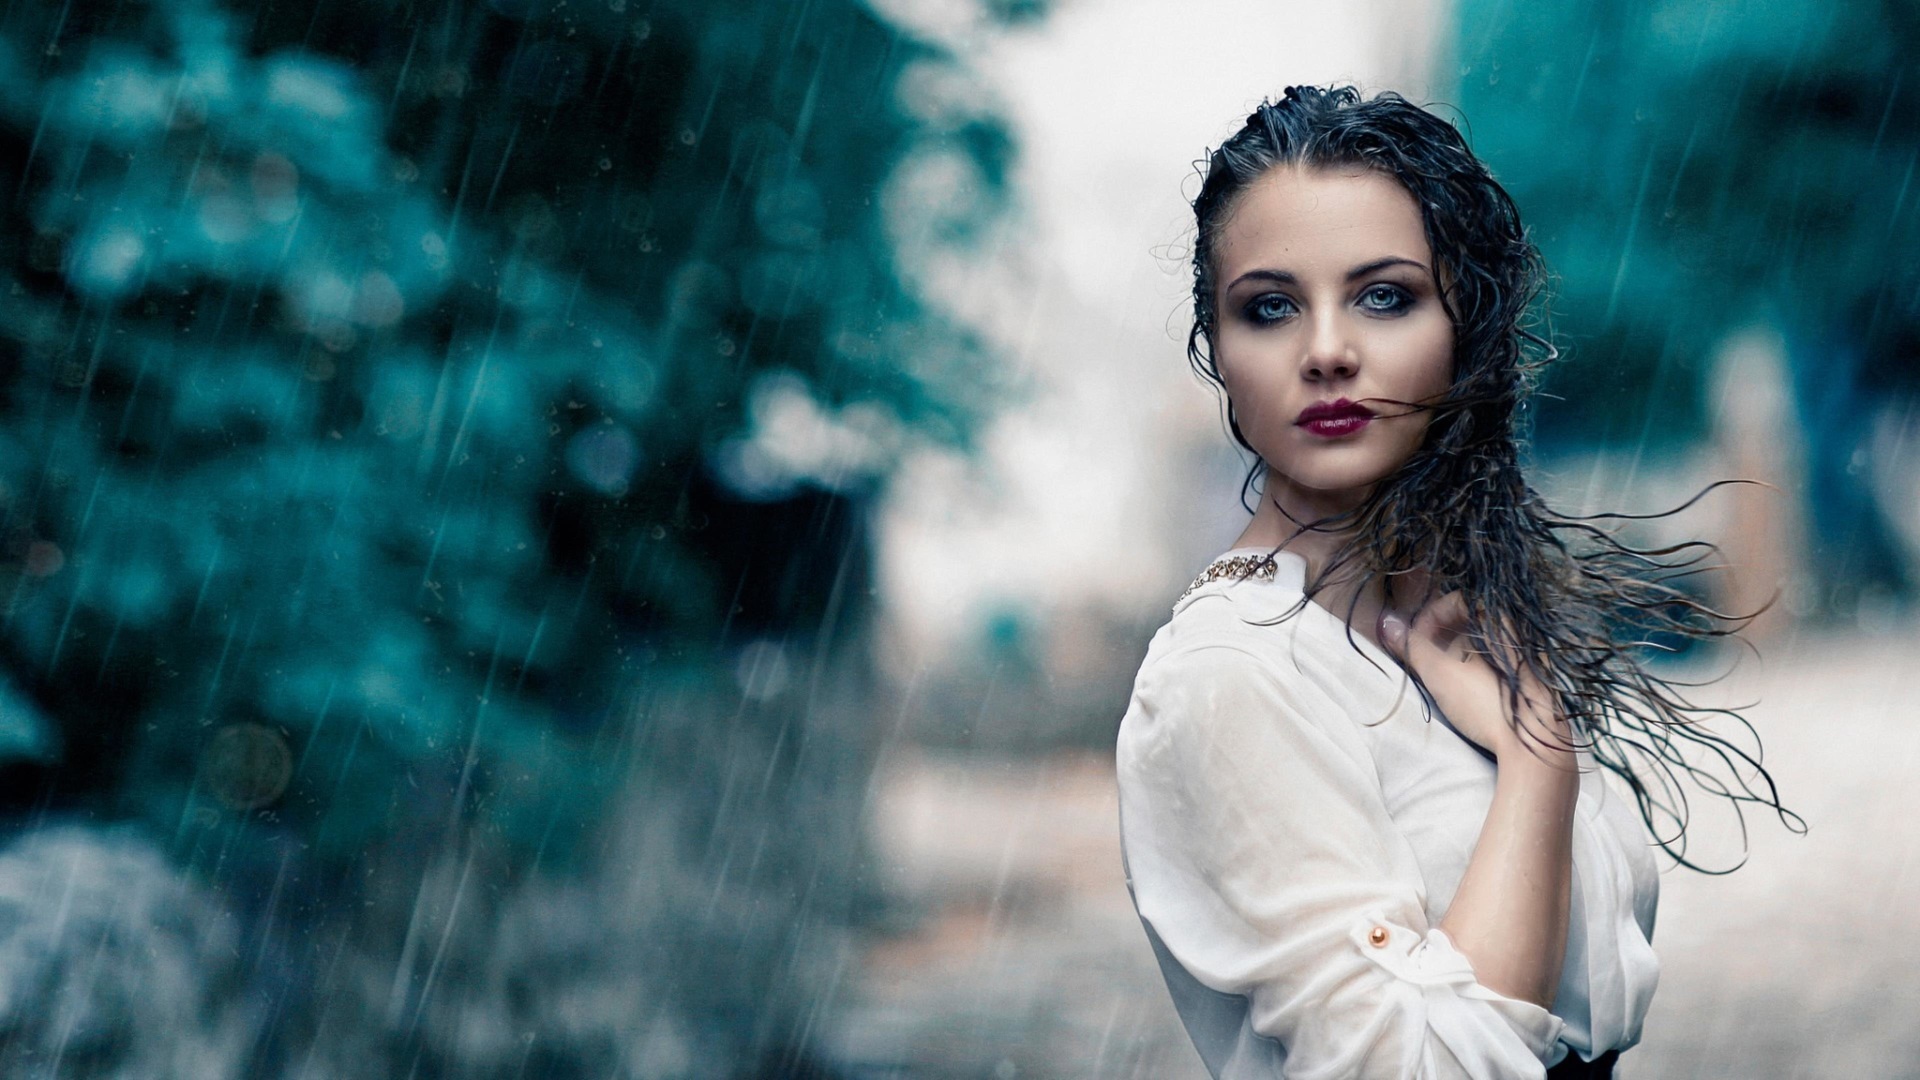 Photographie artistique - femme sous la pluie.jpg